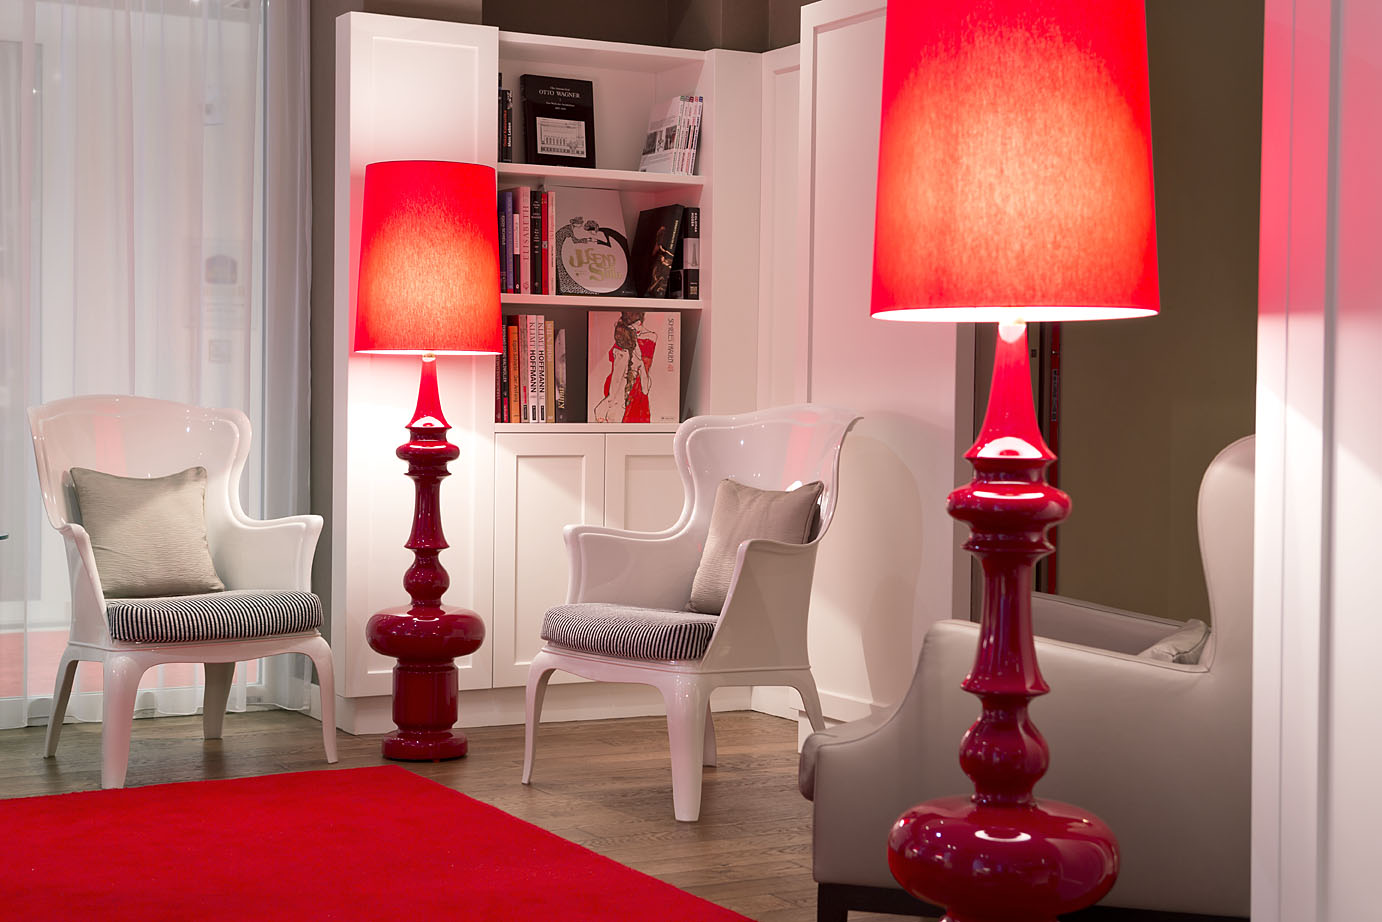 In der Bücherei des Hotels stehen zwei weiße Stühle und rote Stehlampen